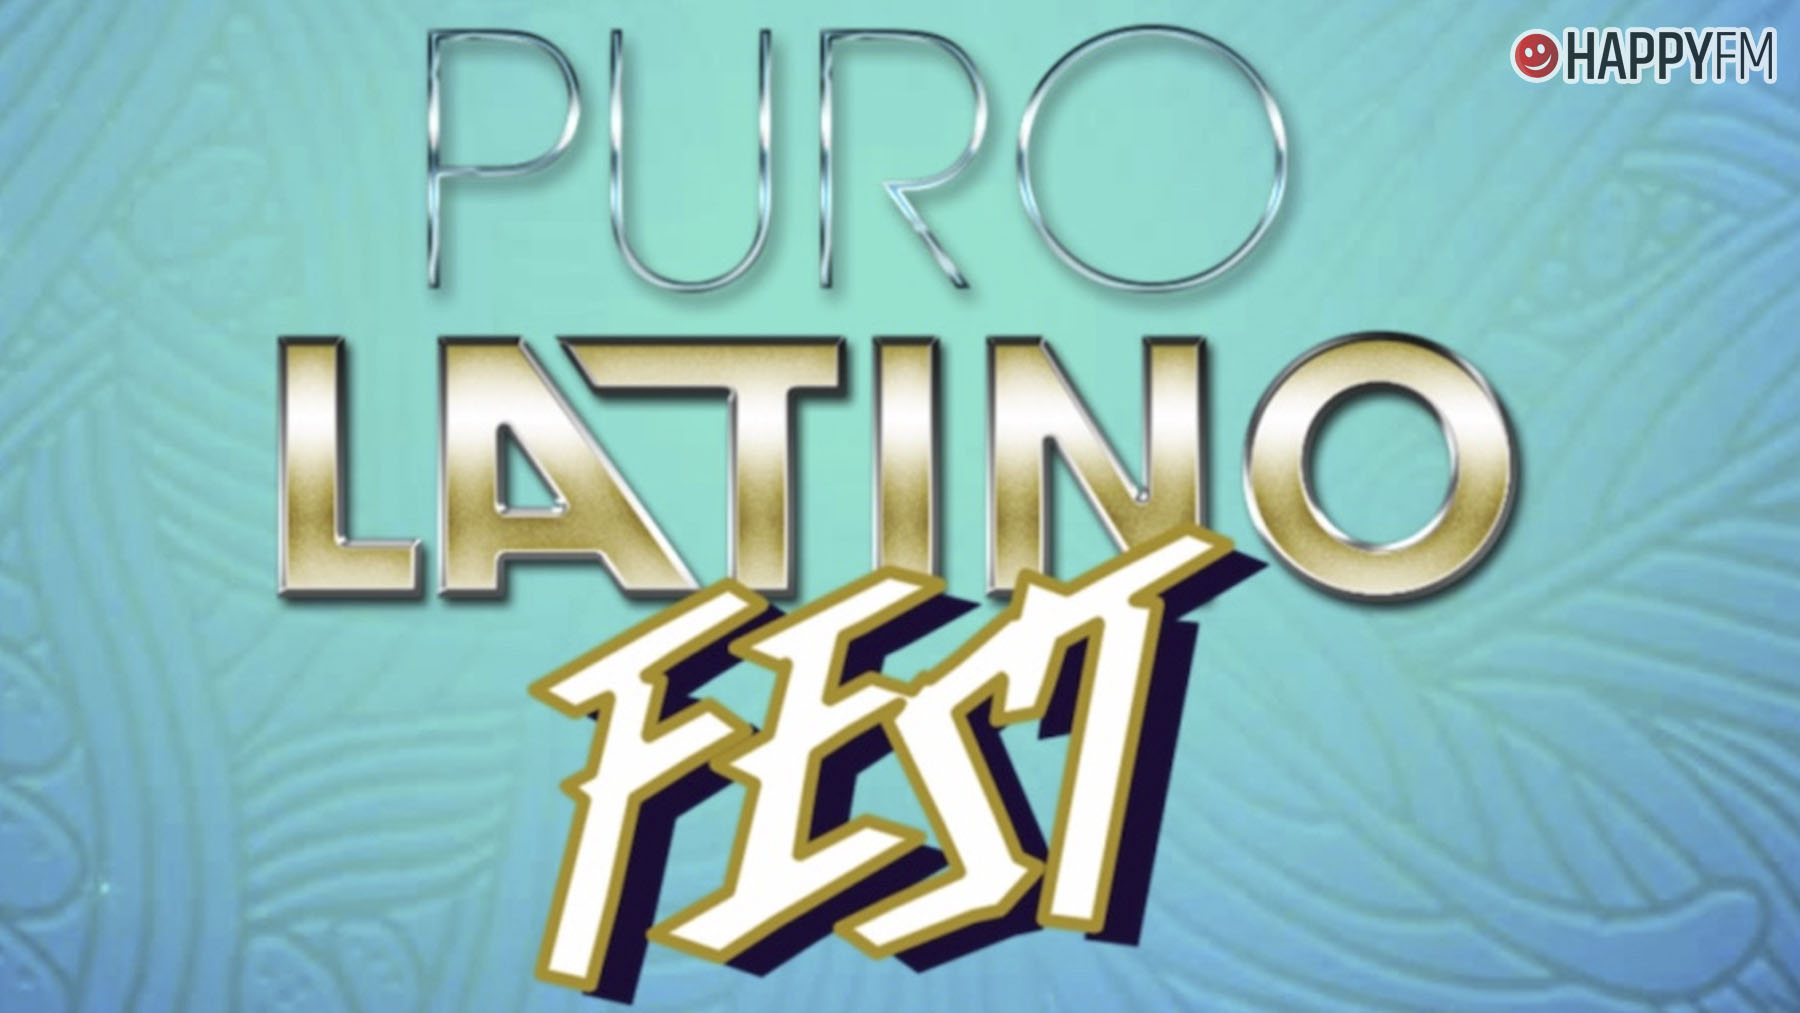 Puro Latino Fest Torremolinos.